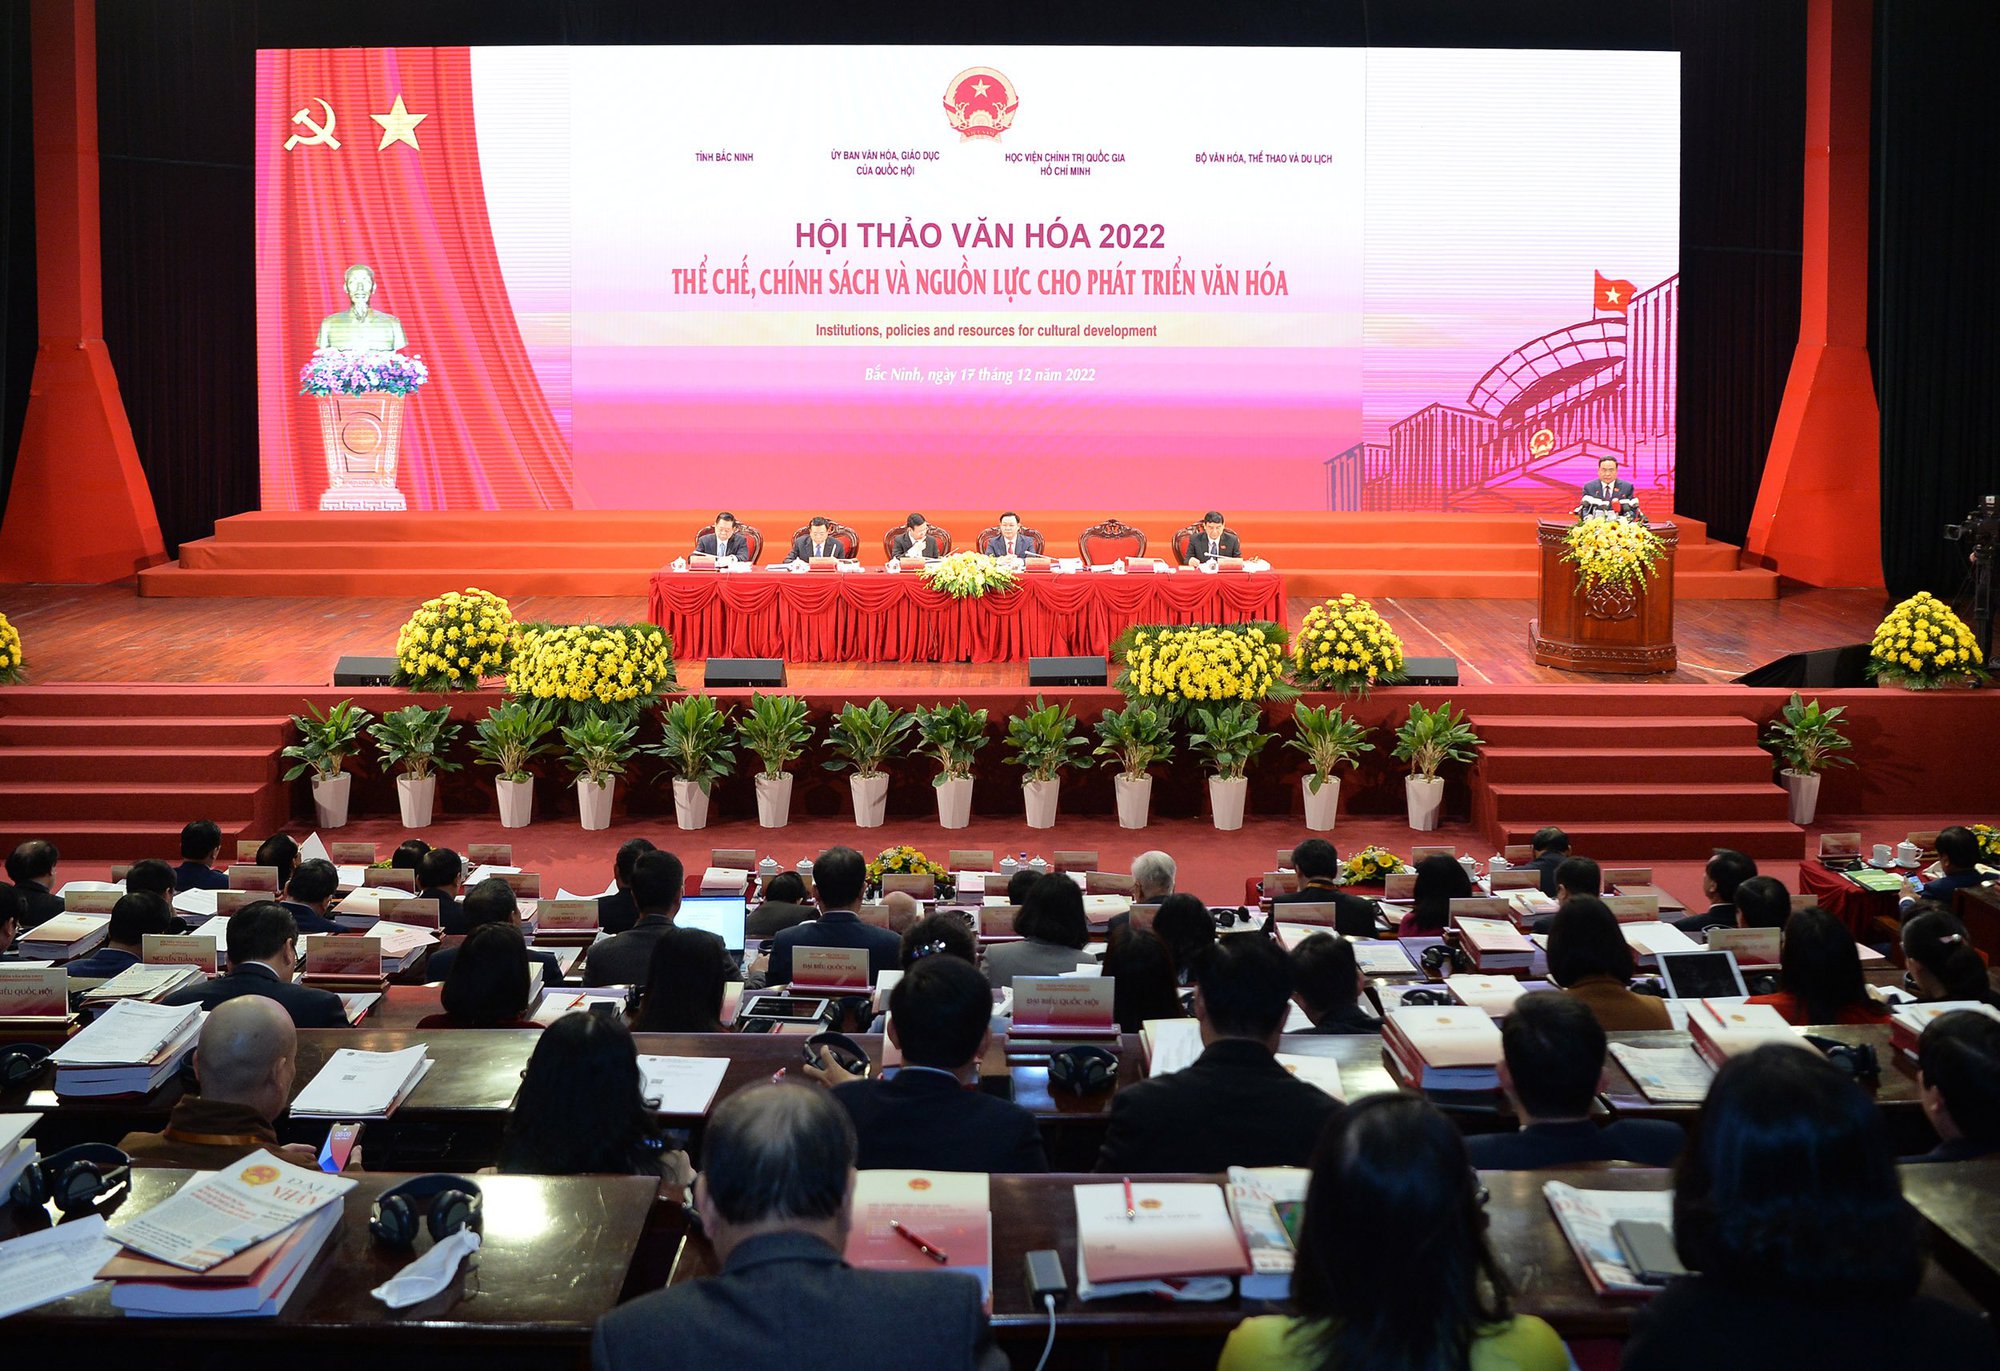 Khai mạc Hội thảo Văn hóa 2022: Để văn hoá, sức mạnh con người Việt Nam thật sự xứng tầm với vị thế, công cuộc đổi mới, hội nhập và phát triển đất nước - Ảnh 1.